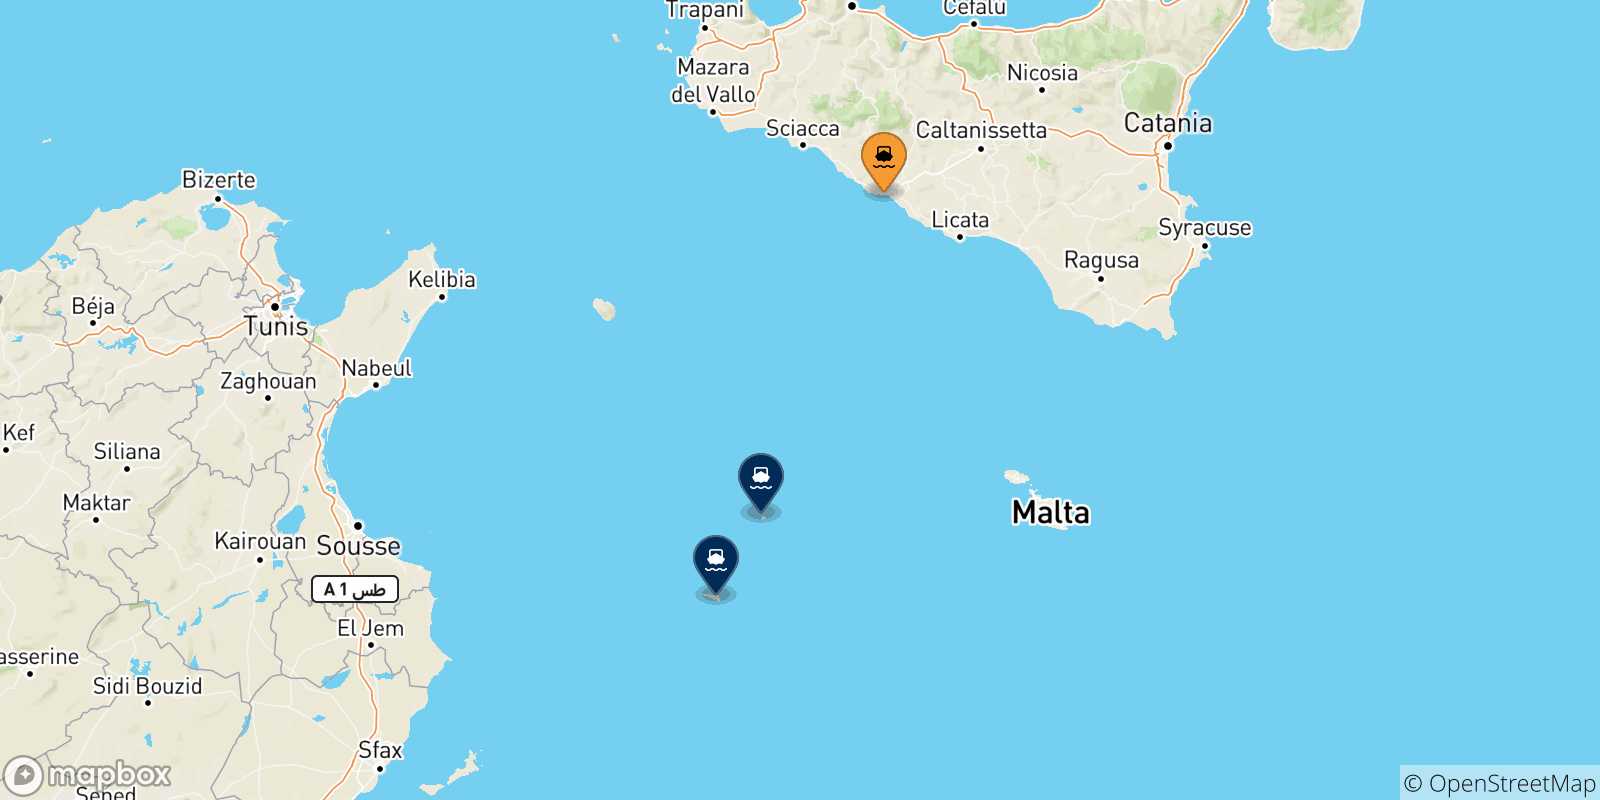 Mappa delle possibili rotte tra Porto Empedocle e le Isole Pelagie